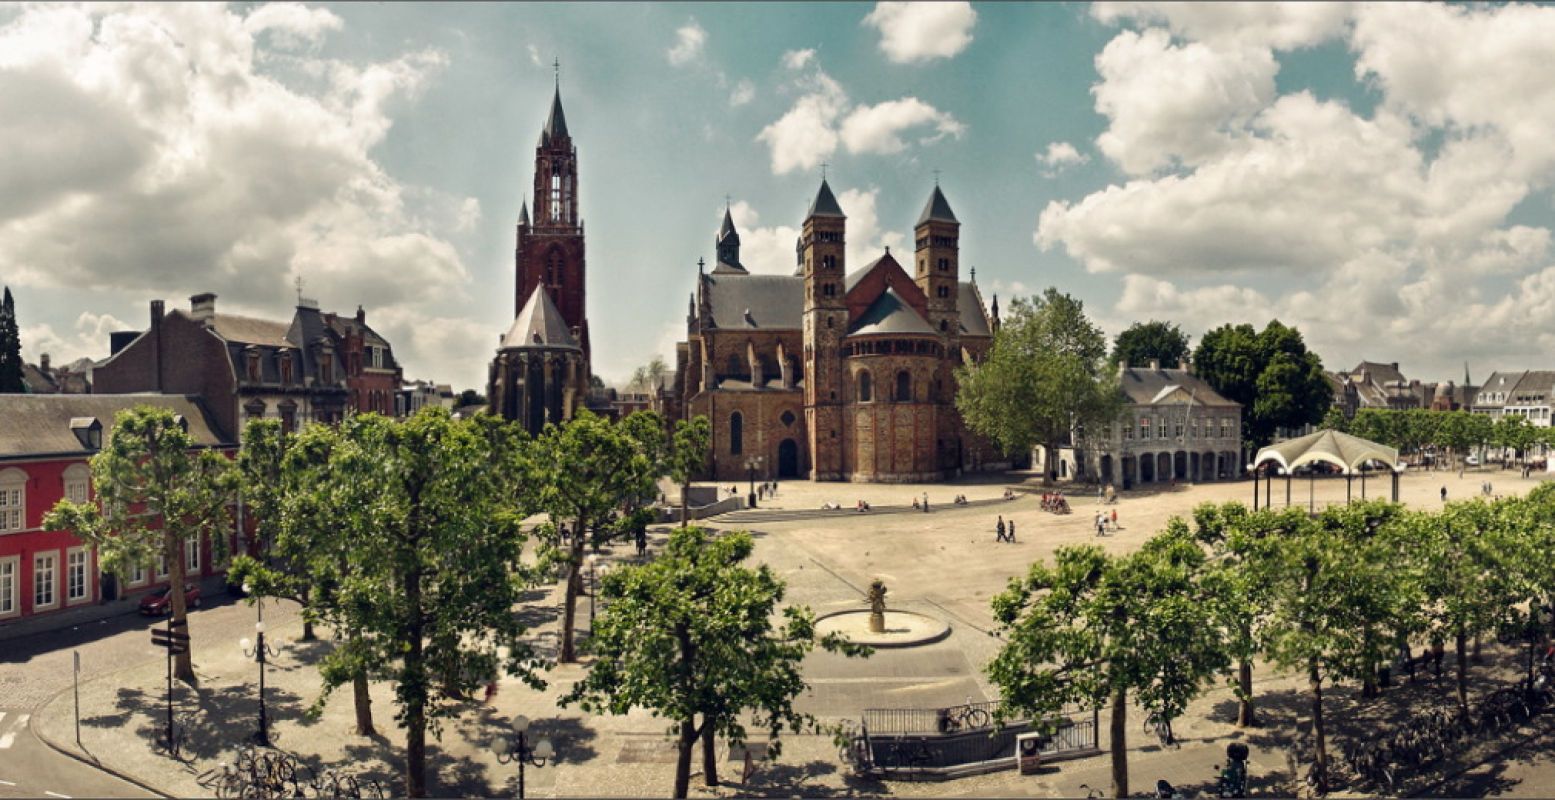 Het Vrijthof, het bruisende hart van Maastricht. Foto: Maastricht Marketing, Paul Mellaart